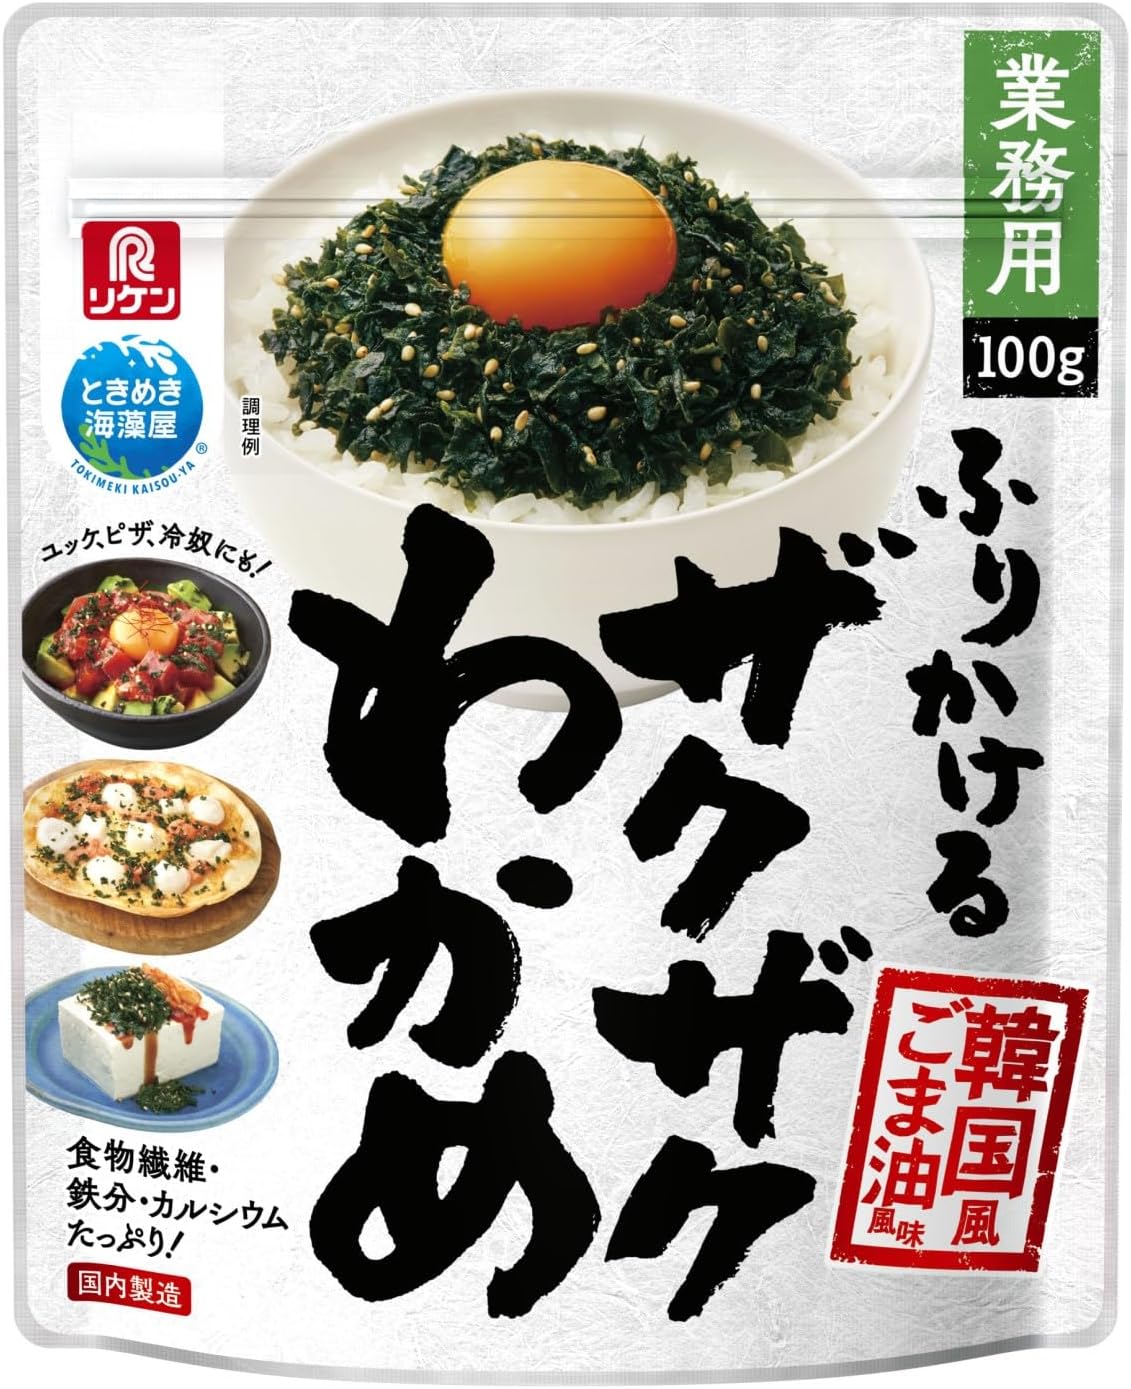 漬物用サイズ！青森県産ごぼう1.6kg(38本分) - 野菜